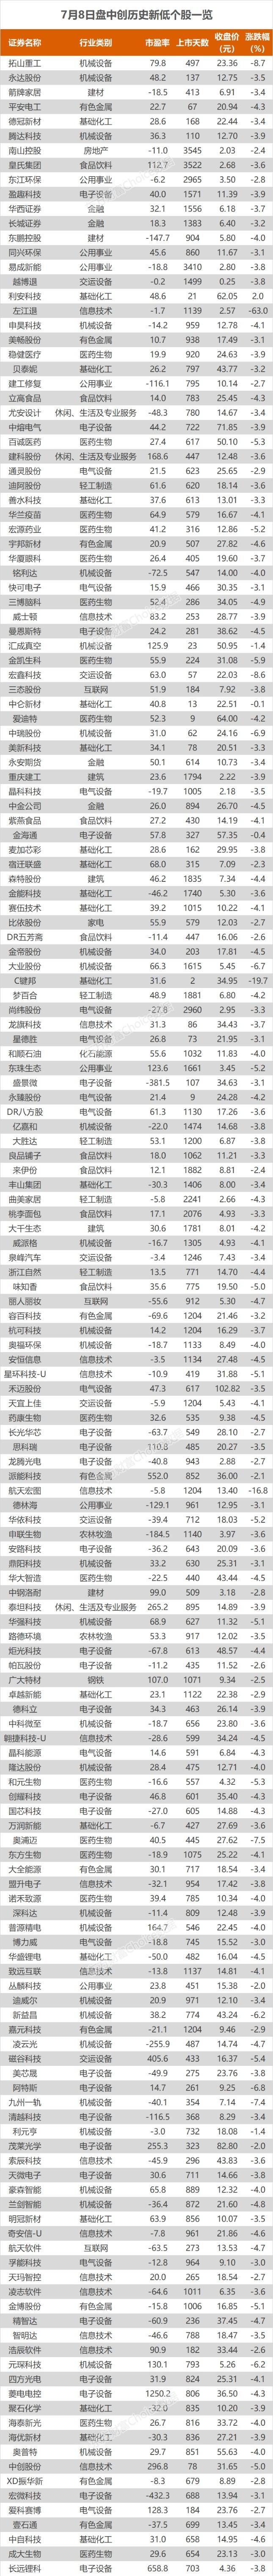 沪指跌0.93% 中国广核、长江电力等创历史新高